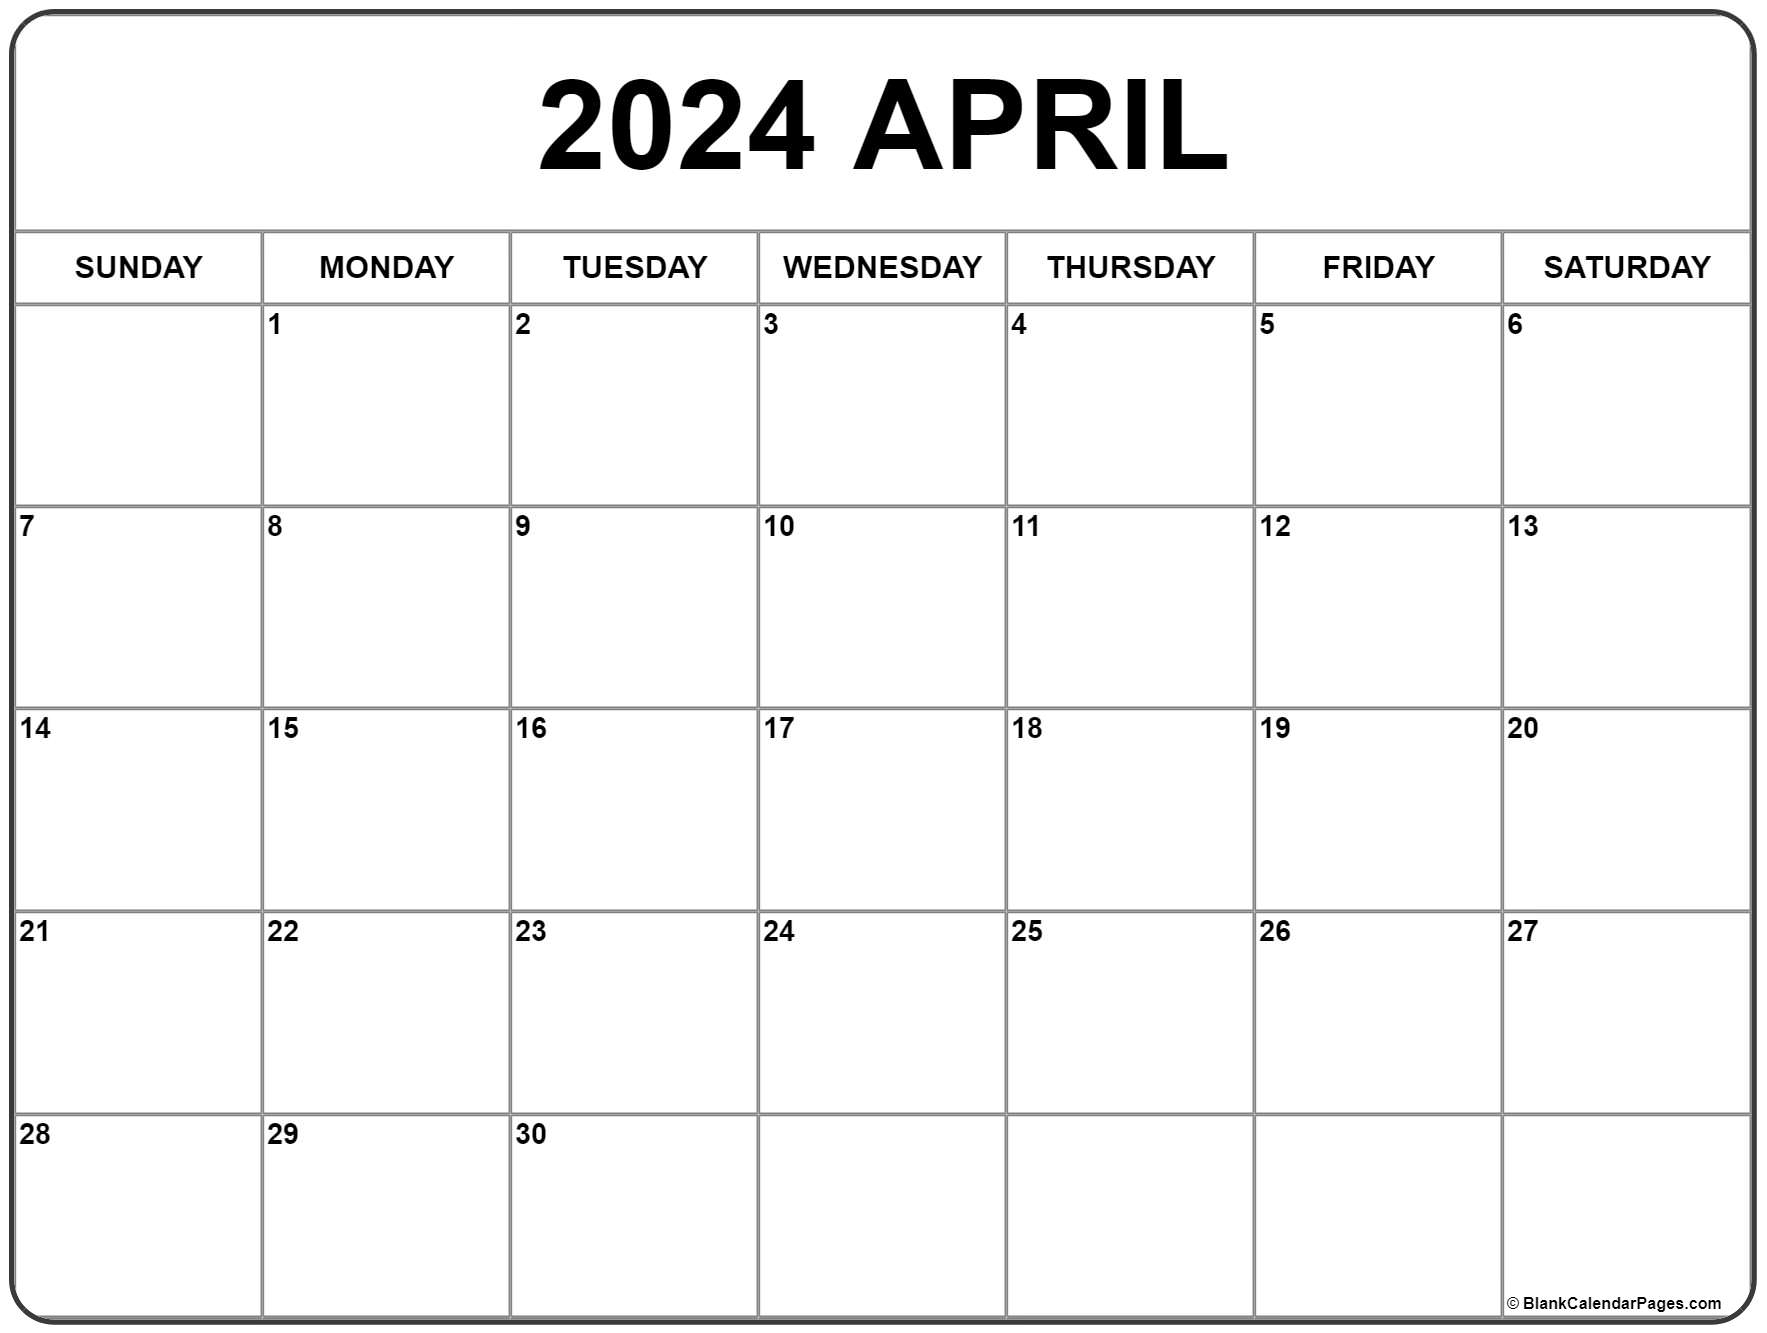 April 2024 Calendar | Free Printable Calendar for Free Printable Calendar April And May 2024